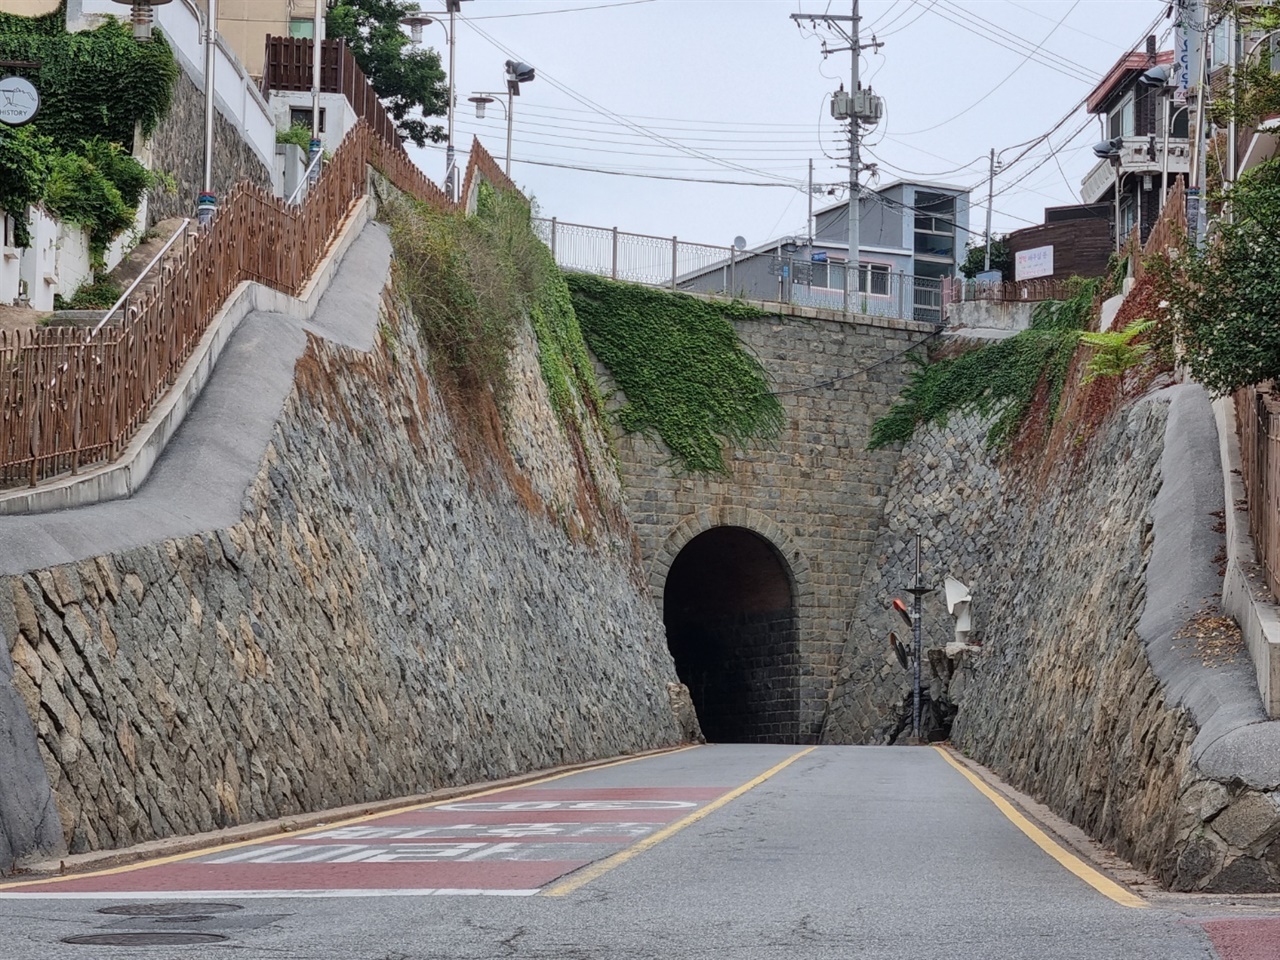 시간이 지날수록 일본인들이 살던 구획은 점점 포화상태로 접어들어 그 구역을 확장하기 위해 인천항에서 동인천으로 들어가는 산을 깎아 홍예문을 조성했다.